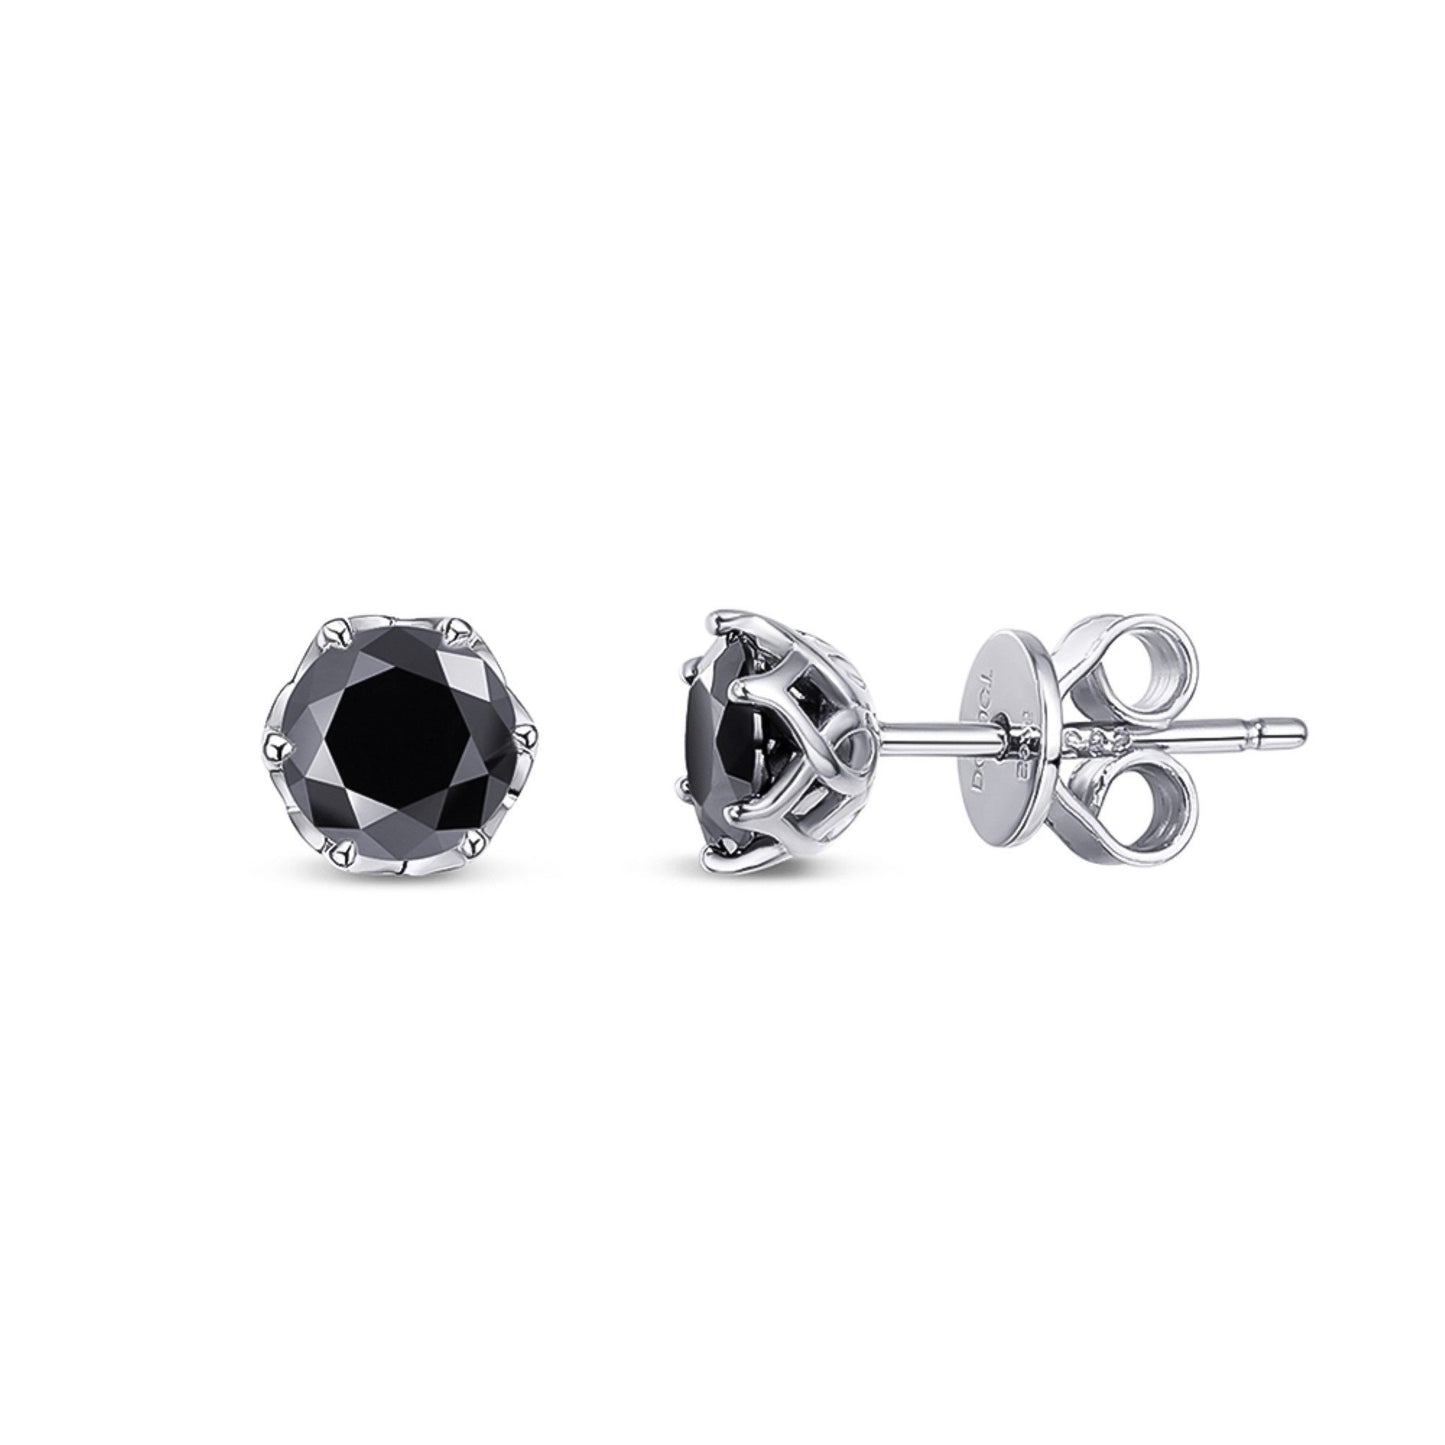 0.5-1 Carat Natural Moissanite Stud Earrings, Solid 925 Sterling Silver Earrings \ Wedding Stud Earrings \ Moissanite Sterling Silver Studs